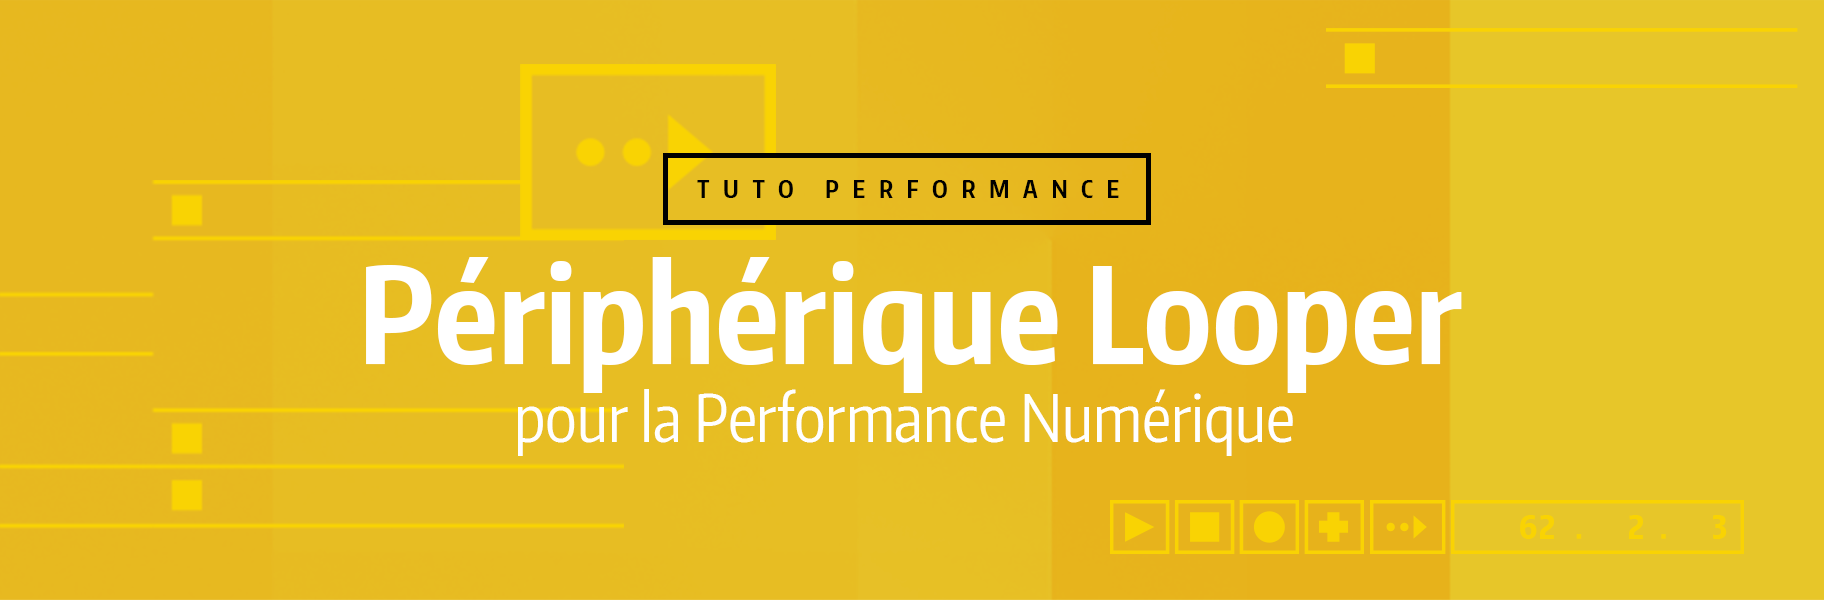 Tutoriel Ableton Live - Périphérique Looper pour la Performance Numérique